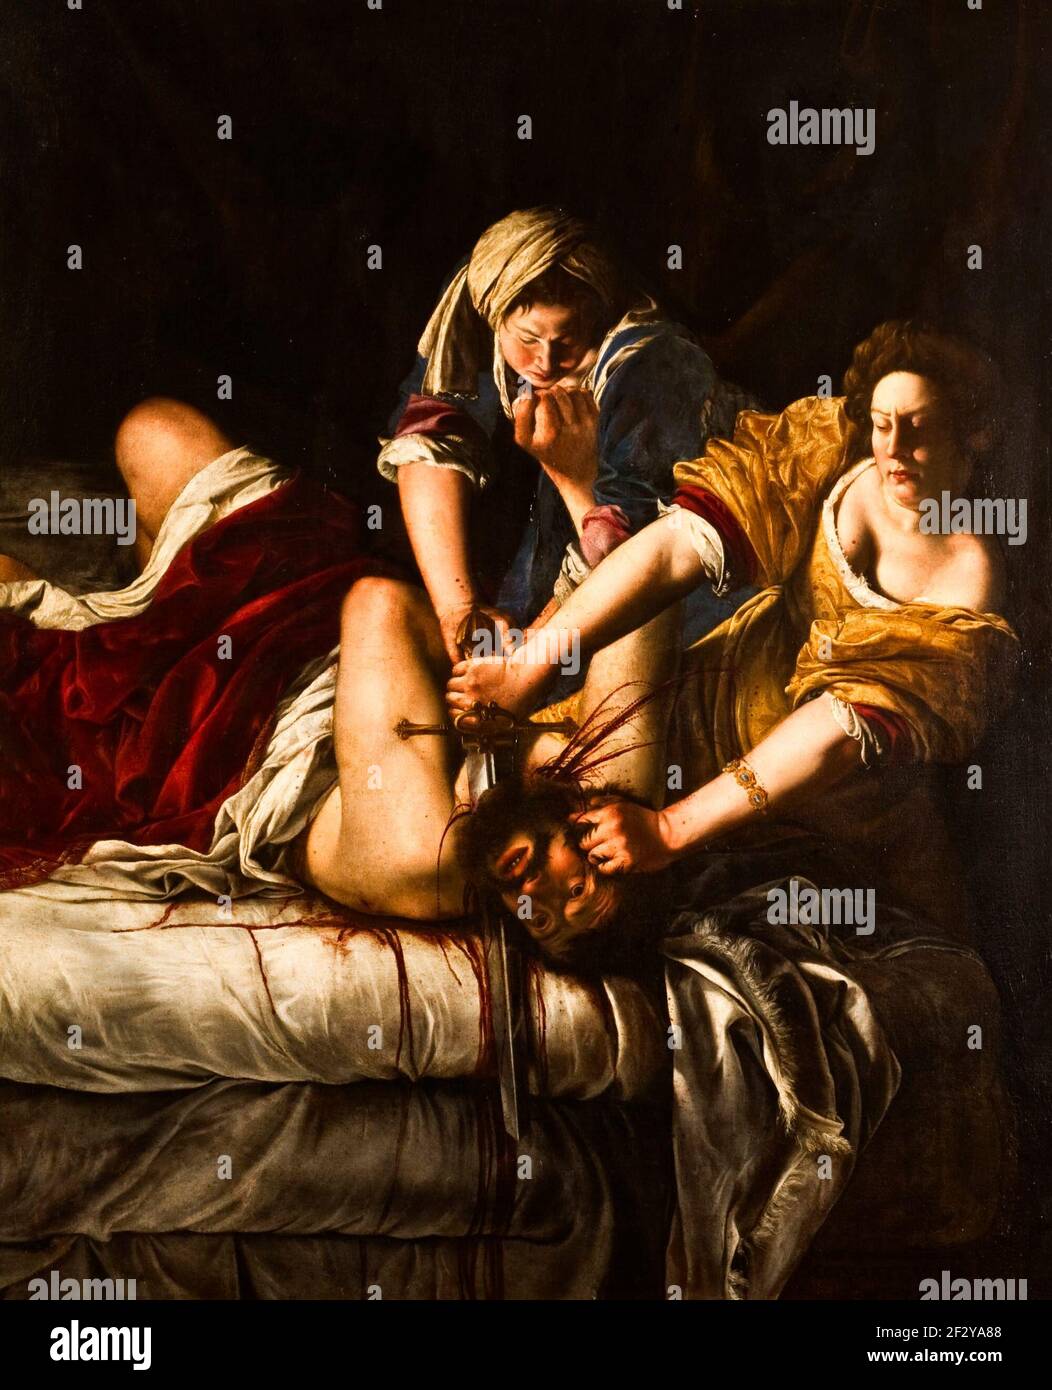 Judith Beheading Holofernes - Artemisia Gentileschi, um 1620 - zwei Frauen stecken einen Mann auf ein Bett. Mit einer Hand hält Judith seinen Kopf, mit der anderen schneidet sie sich mit einem langen Schwert in die Kehle. Die Intensität der Szene wird durch das tropfende Blut hervorgehoben, das die weißen Bettlaken durchtränkt und die Augen des Mannes weit geöffnet sind – bewusst, aber hilflos. Artemisia ist mehr eine Verfechterin starker Frauen als eine Frau, die von Gewalt und Rache besessen ist. Stockfoto